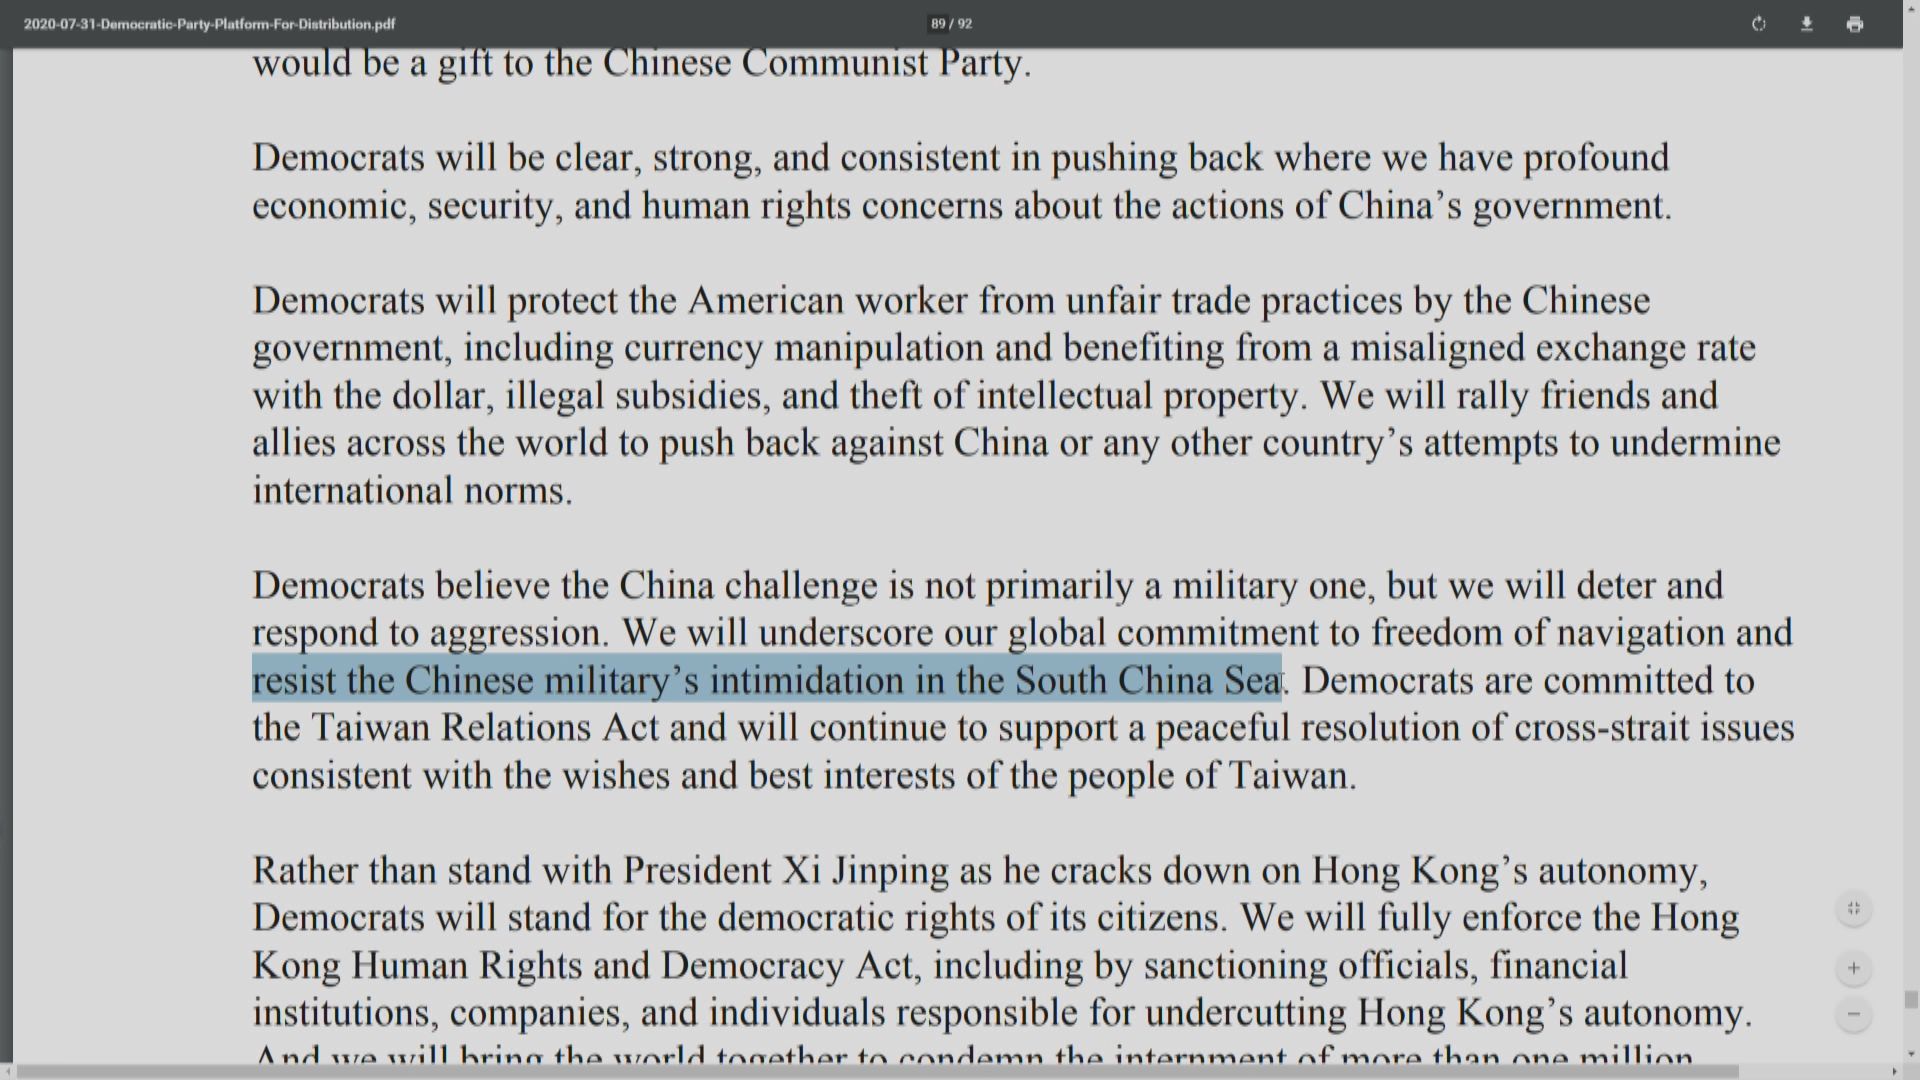 美國民主黨黨綱無再提及「一個中國」字眼